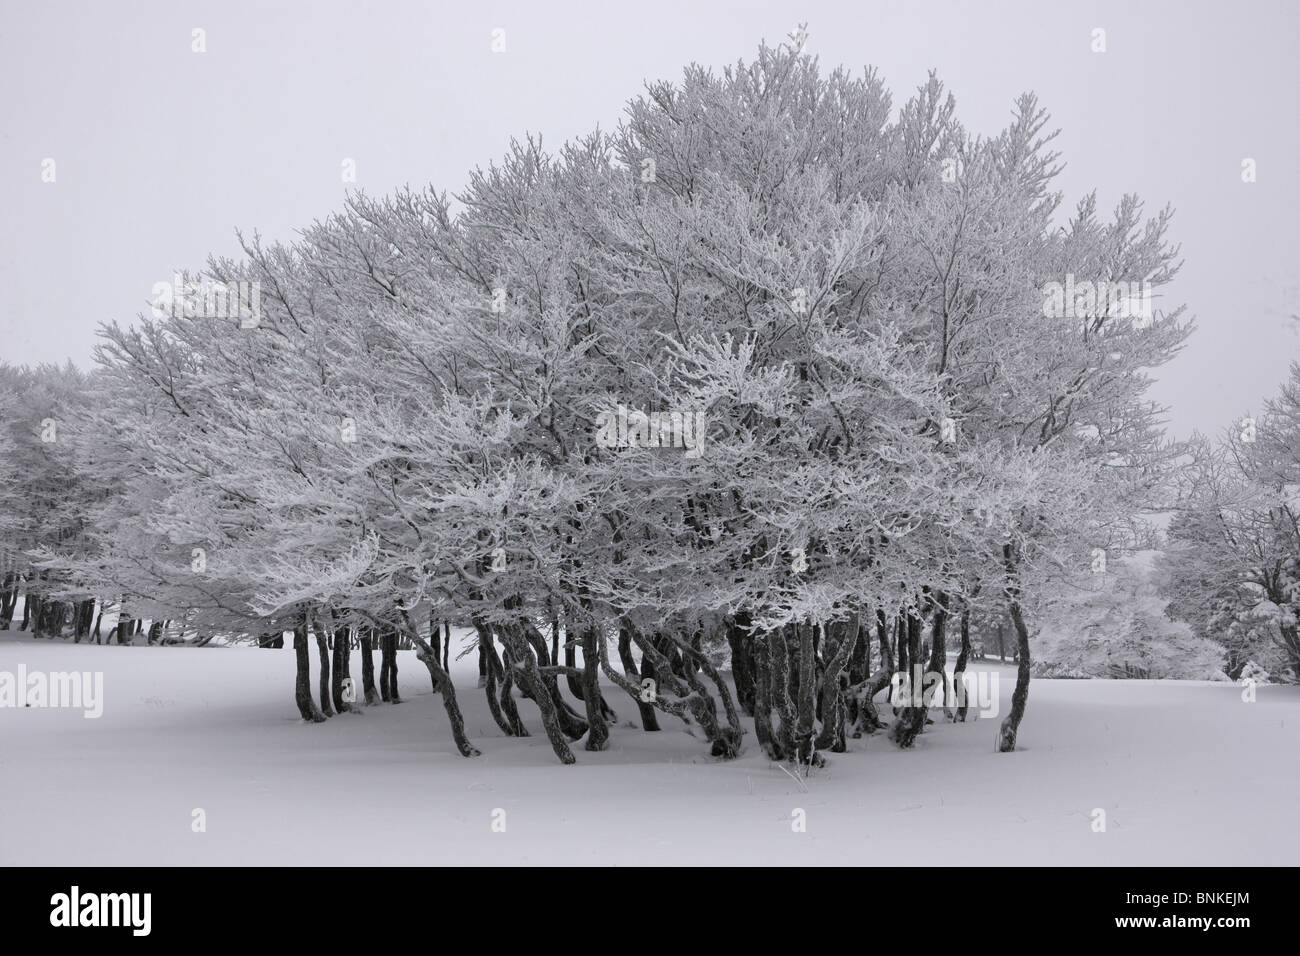 La Svizzera scenario inverni alberi gruppo di alberi neve paesaggio invernale Creux du Van canton Neuchâtel legge Foto Stock